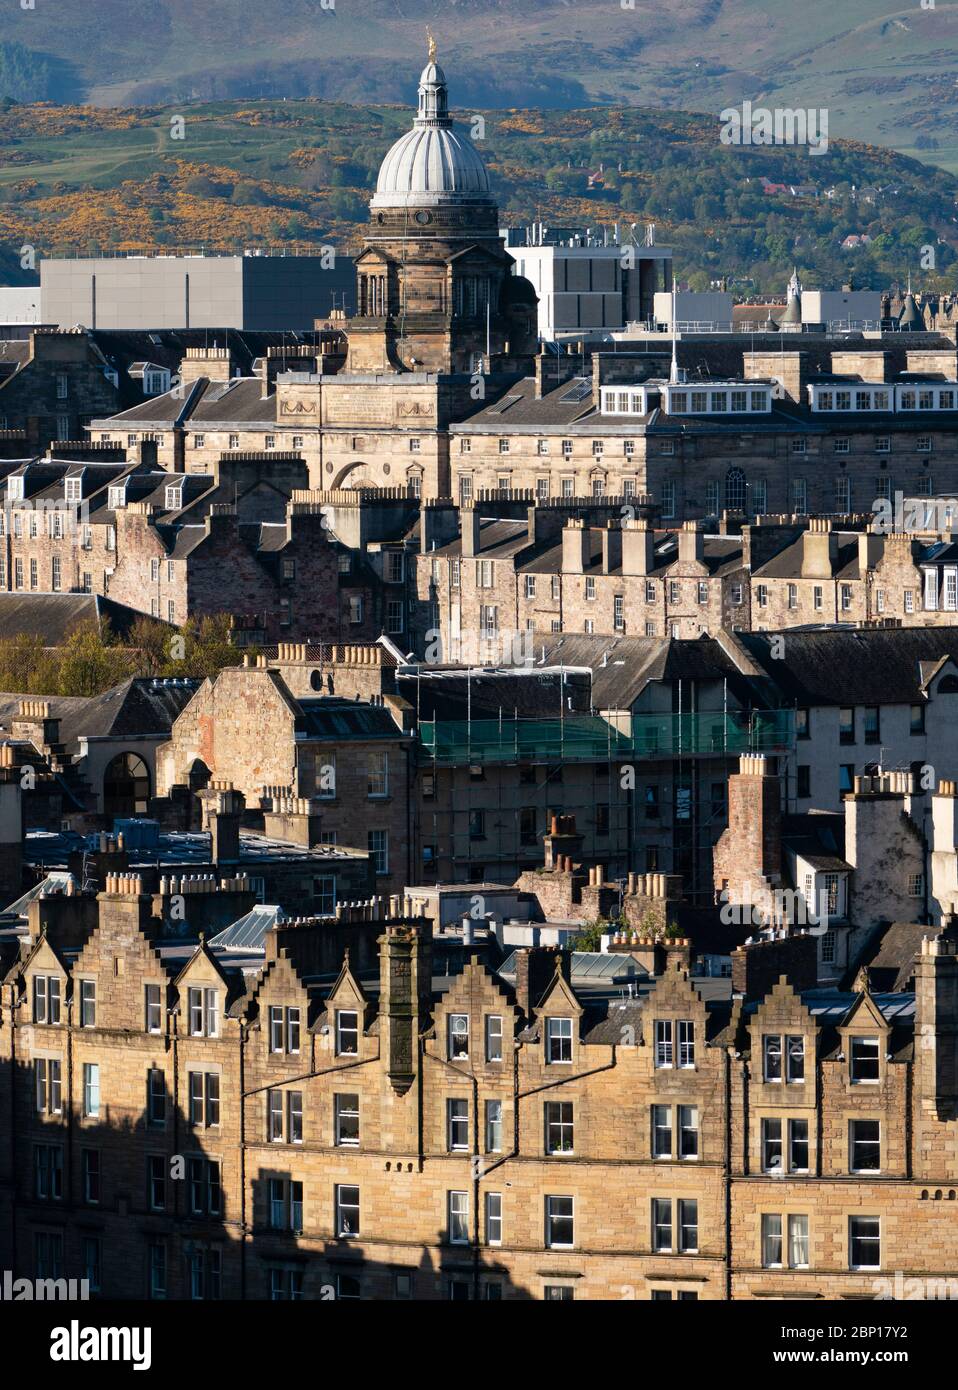 Vue sur les anciens bâtiments traditionnels de la vieille ville d'Édimbourg, Écosse, Royaume-Uni Banque D'Images